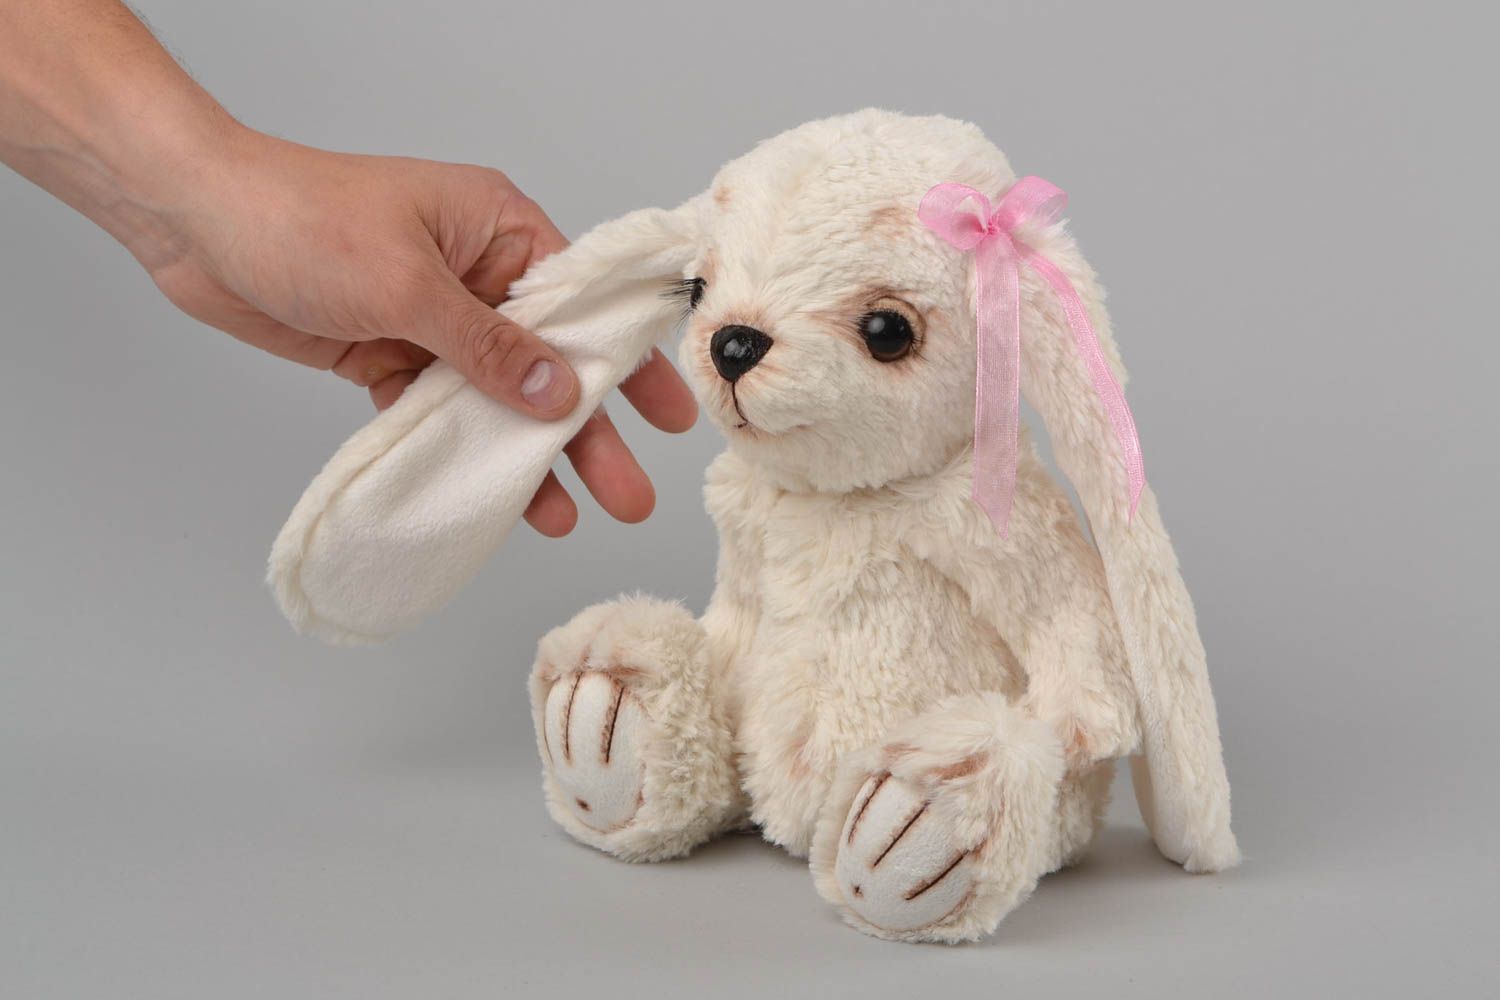 Textil Kuscheltier Hase aus Kunstpelz handmade Schmuck für Haus Dekor niedlich foto 2